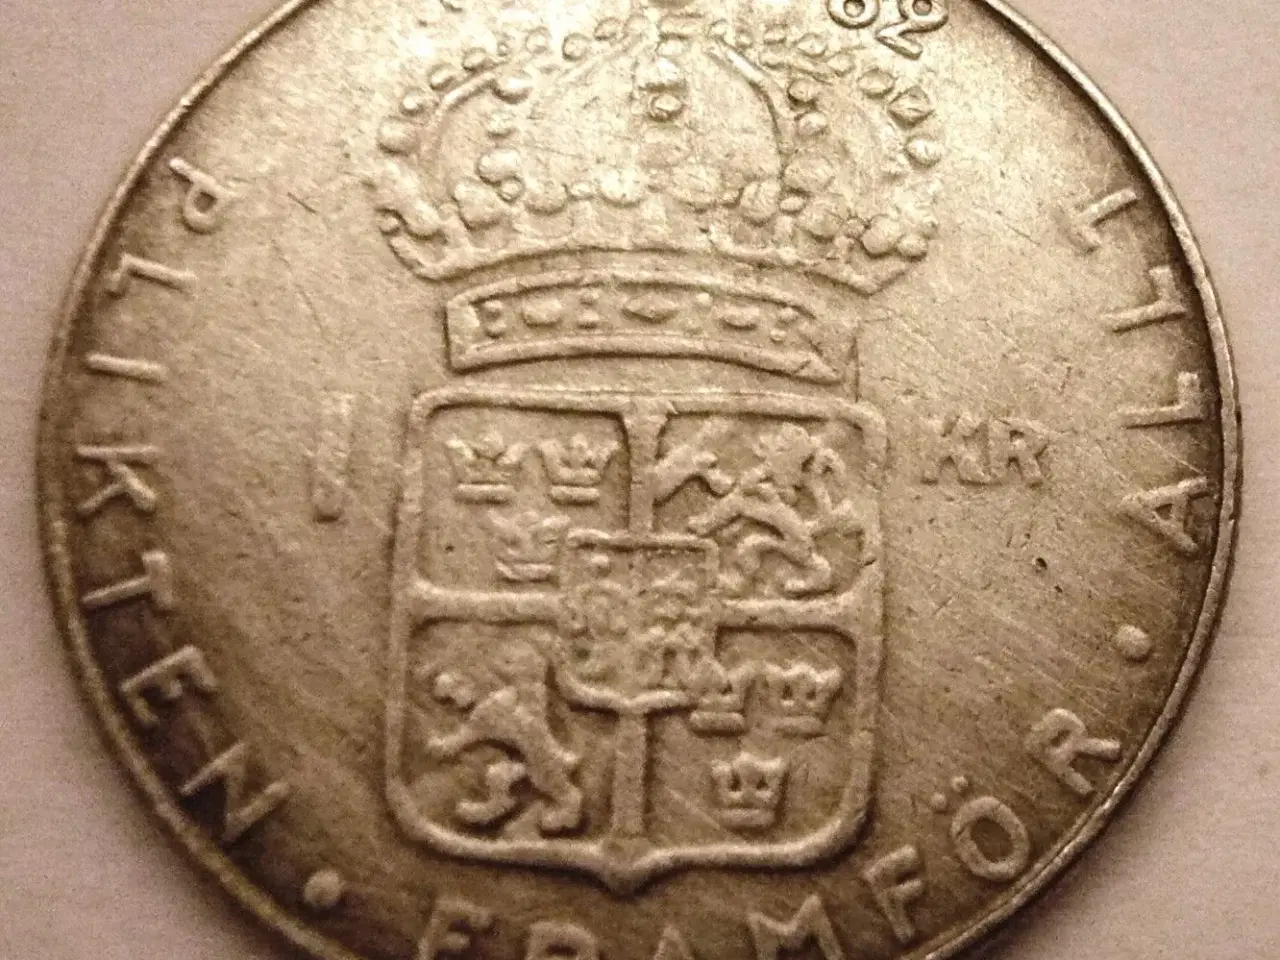 Billede 2 - Svenske 1 krona mønter fra 1952-1973